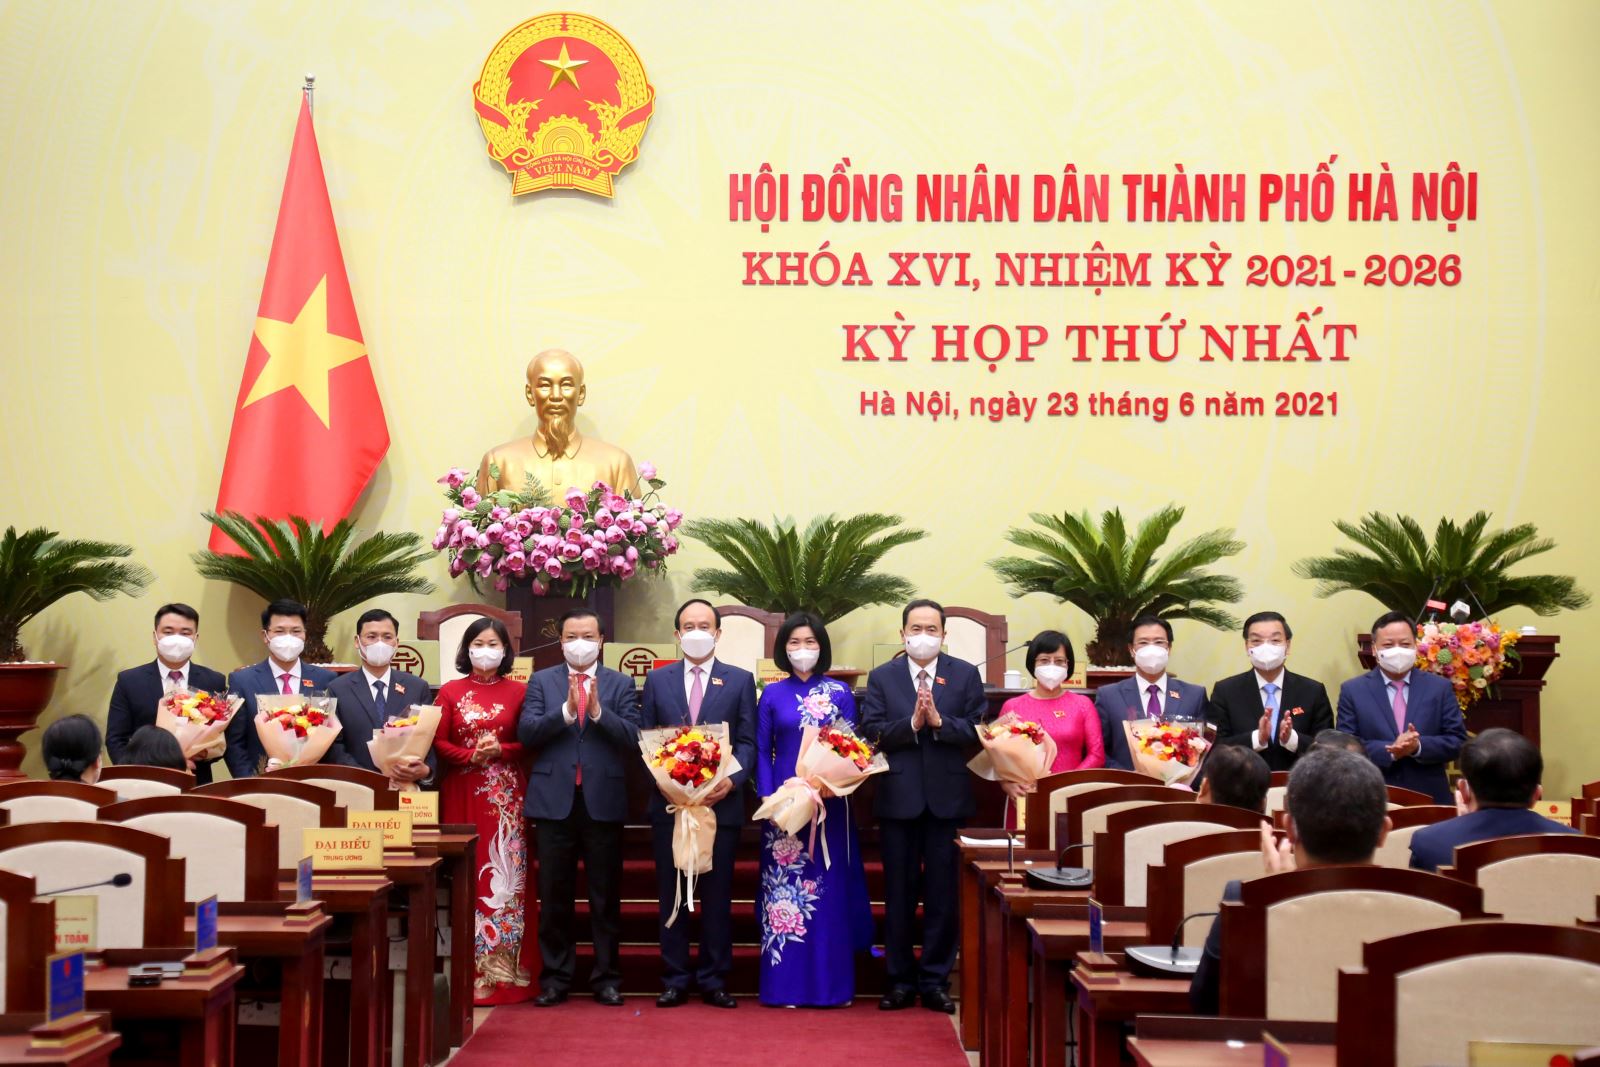 Phó Chủ tịch Thường trực Quốc hội Trần Thanh Mẫn tặng hoa lãnh đạo HĐND thành phố Hà Nội Khoá XVI